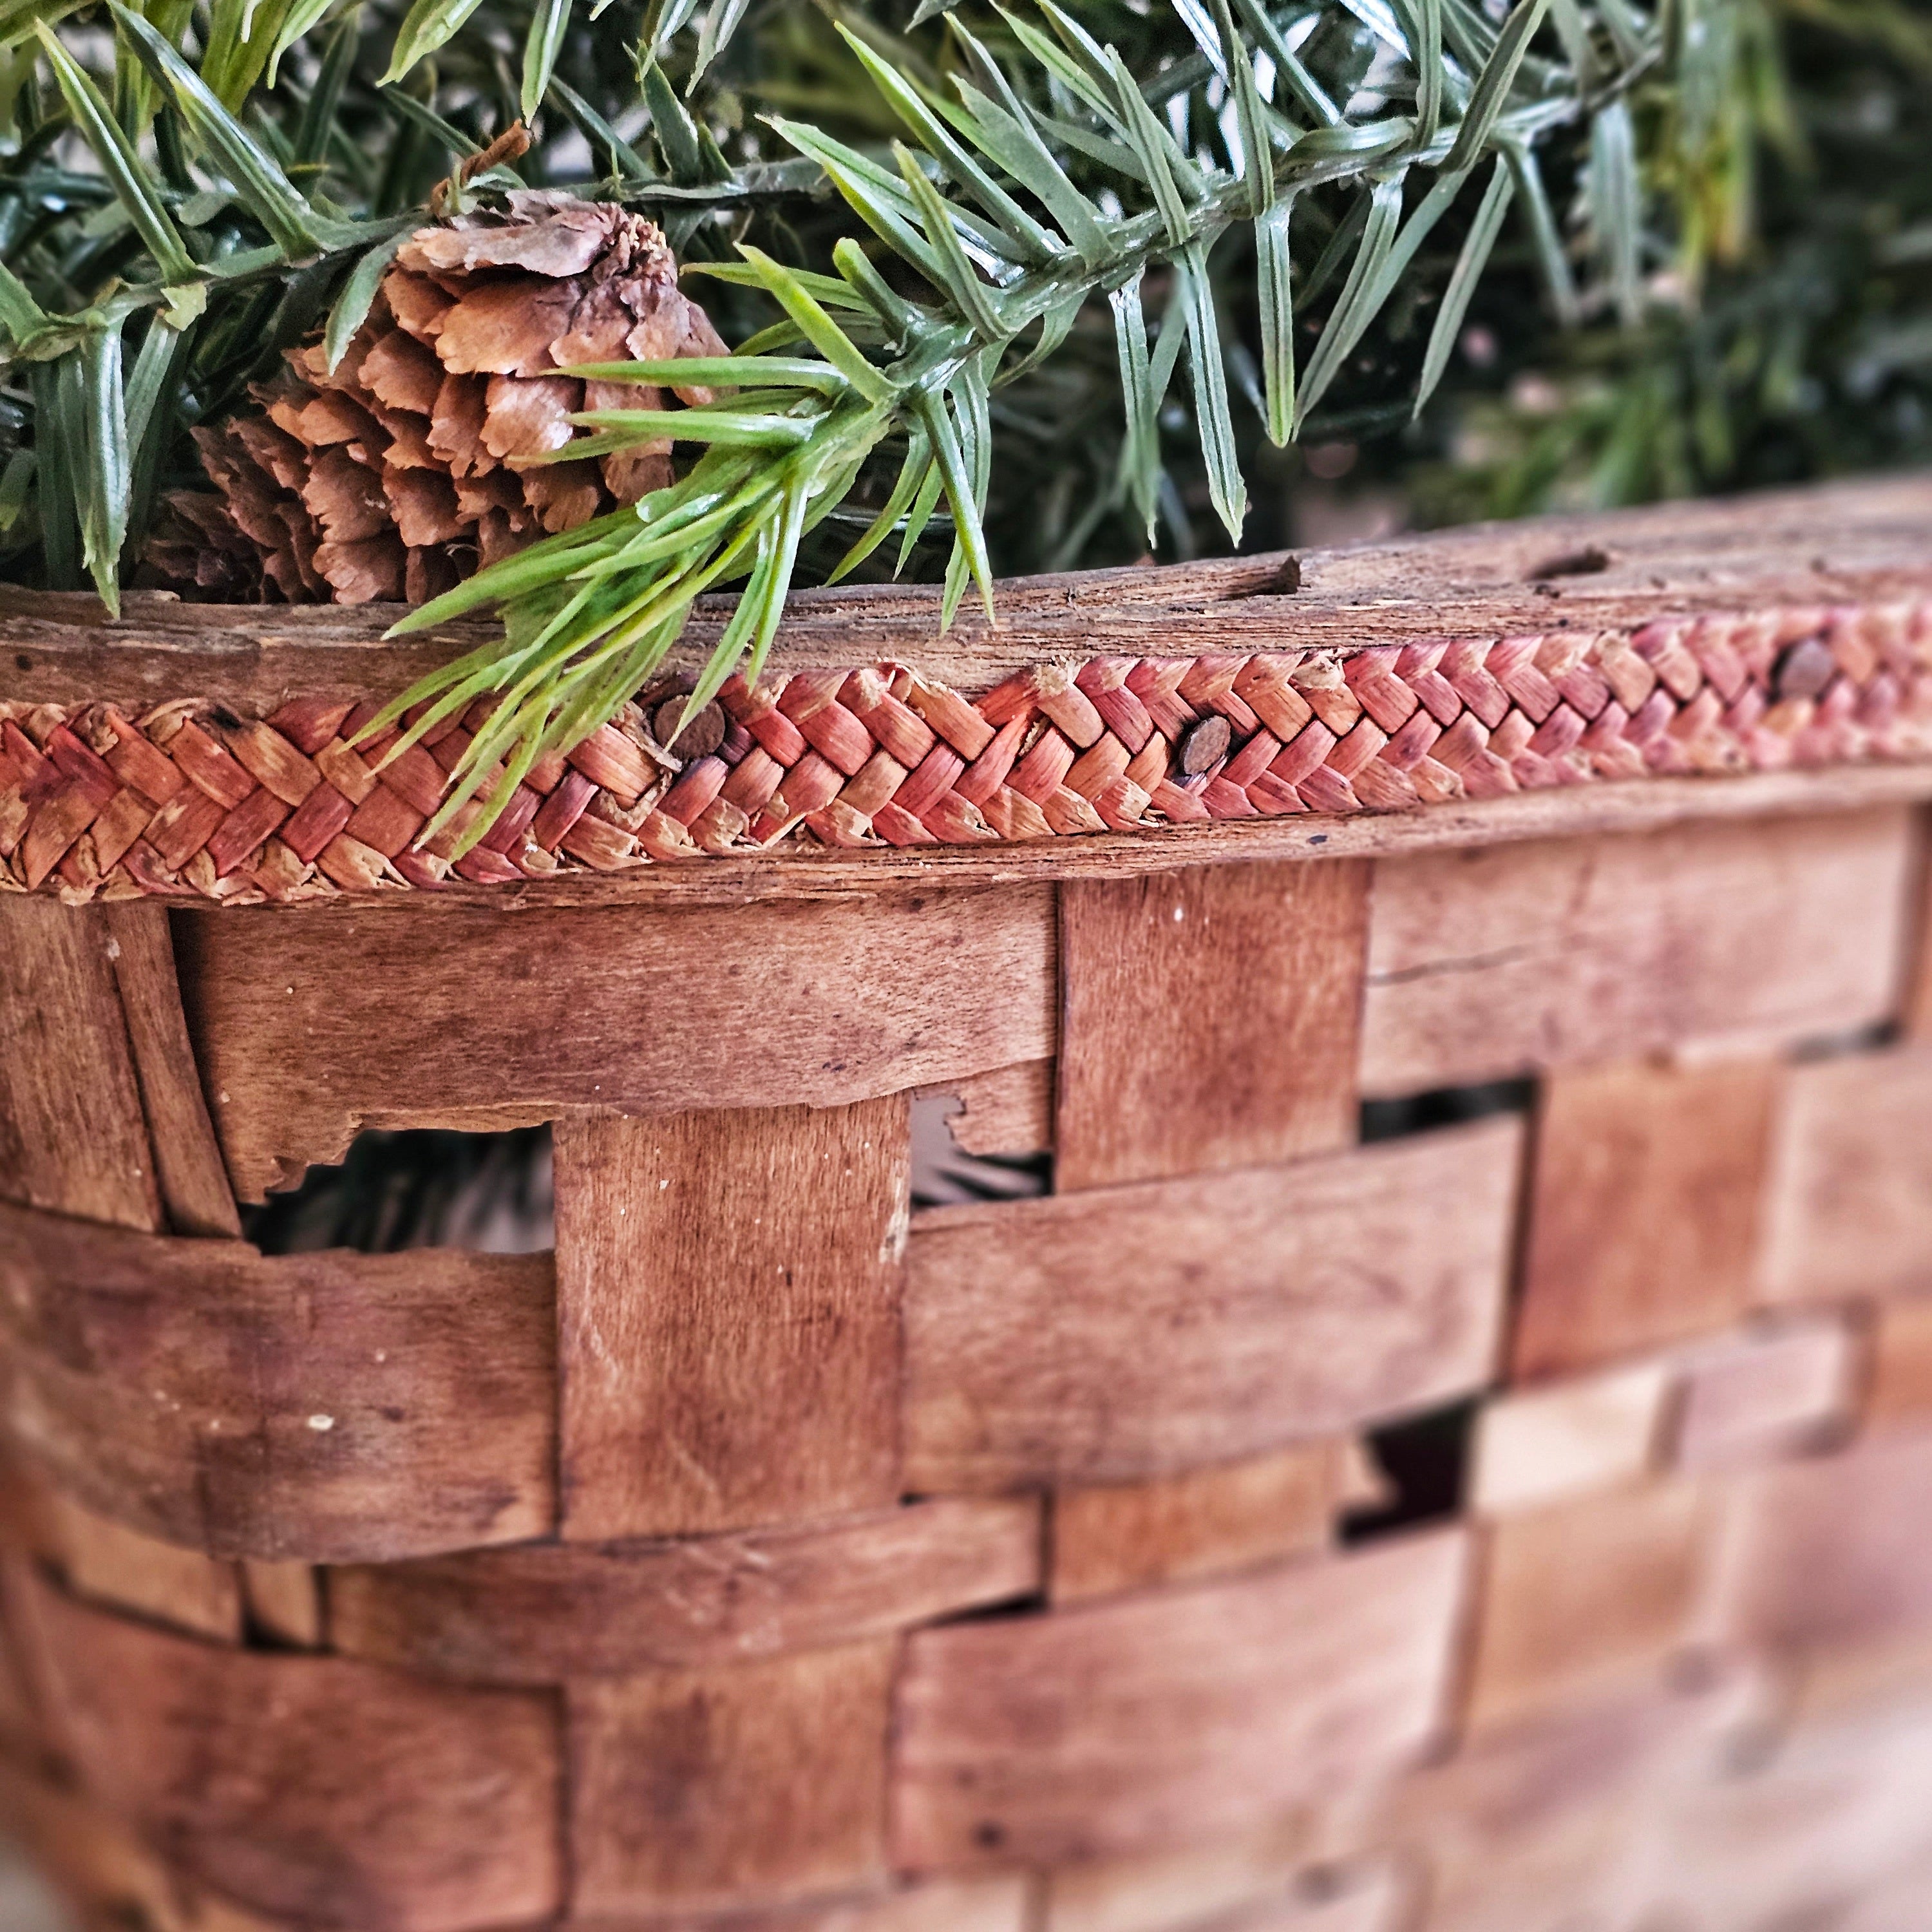 Teeovo&Co Wooden Harvest Basket - Egg Basket for Gathering Fresh